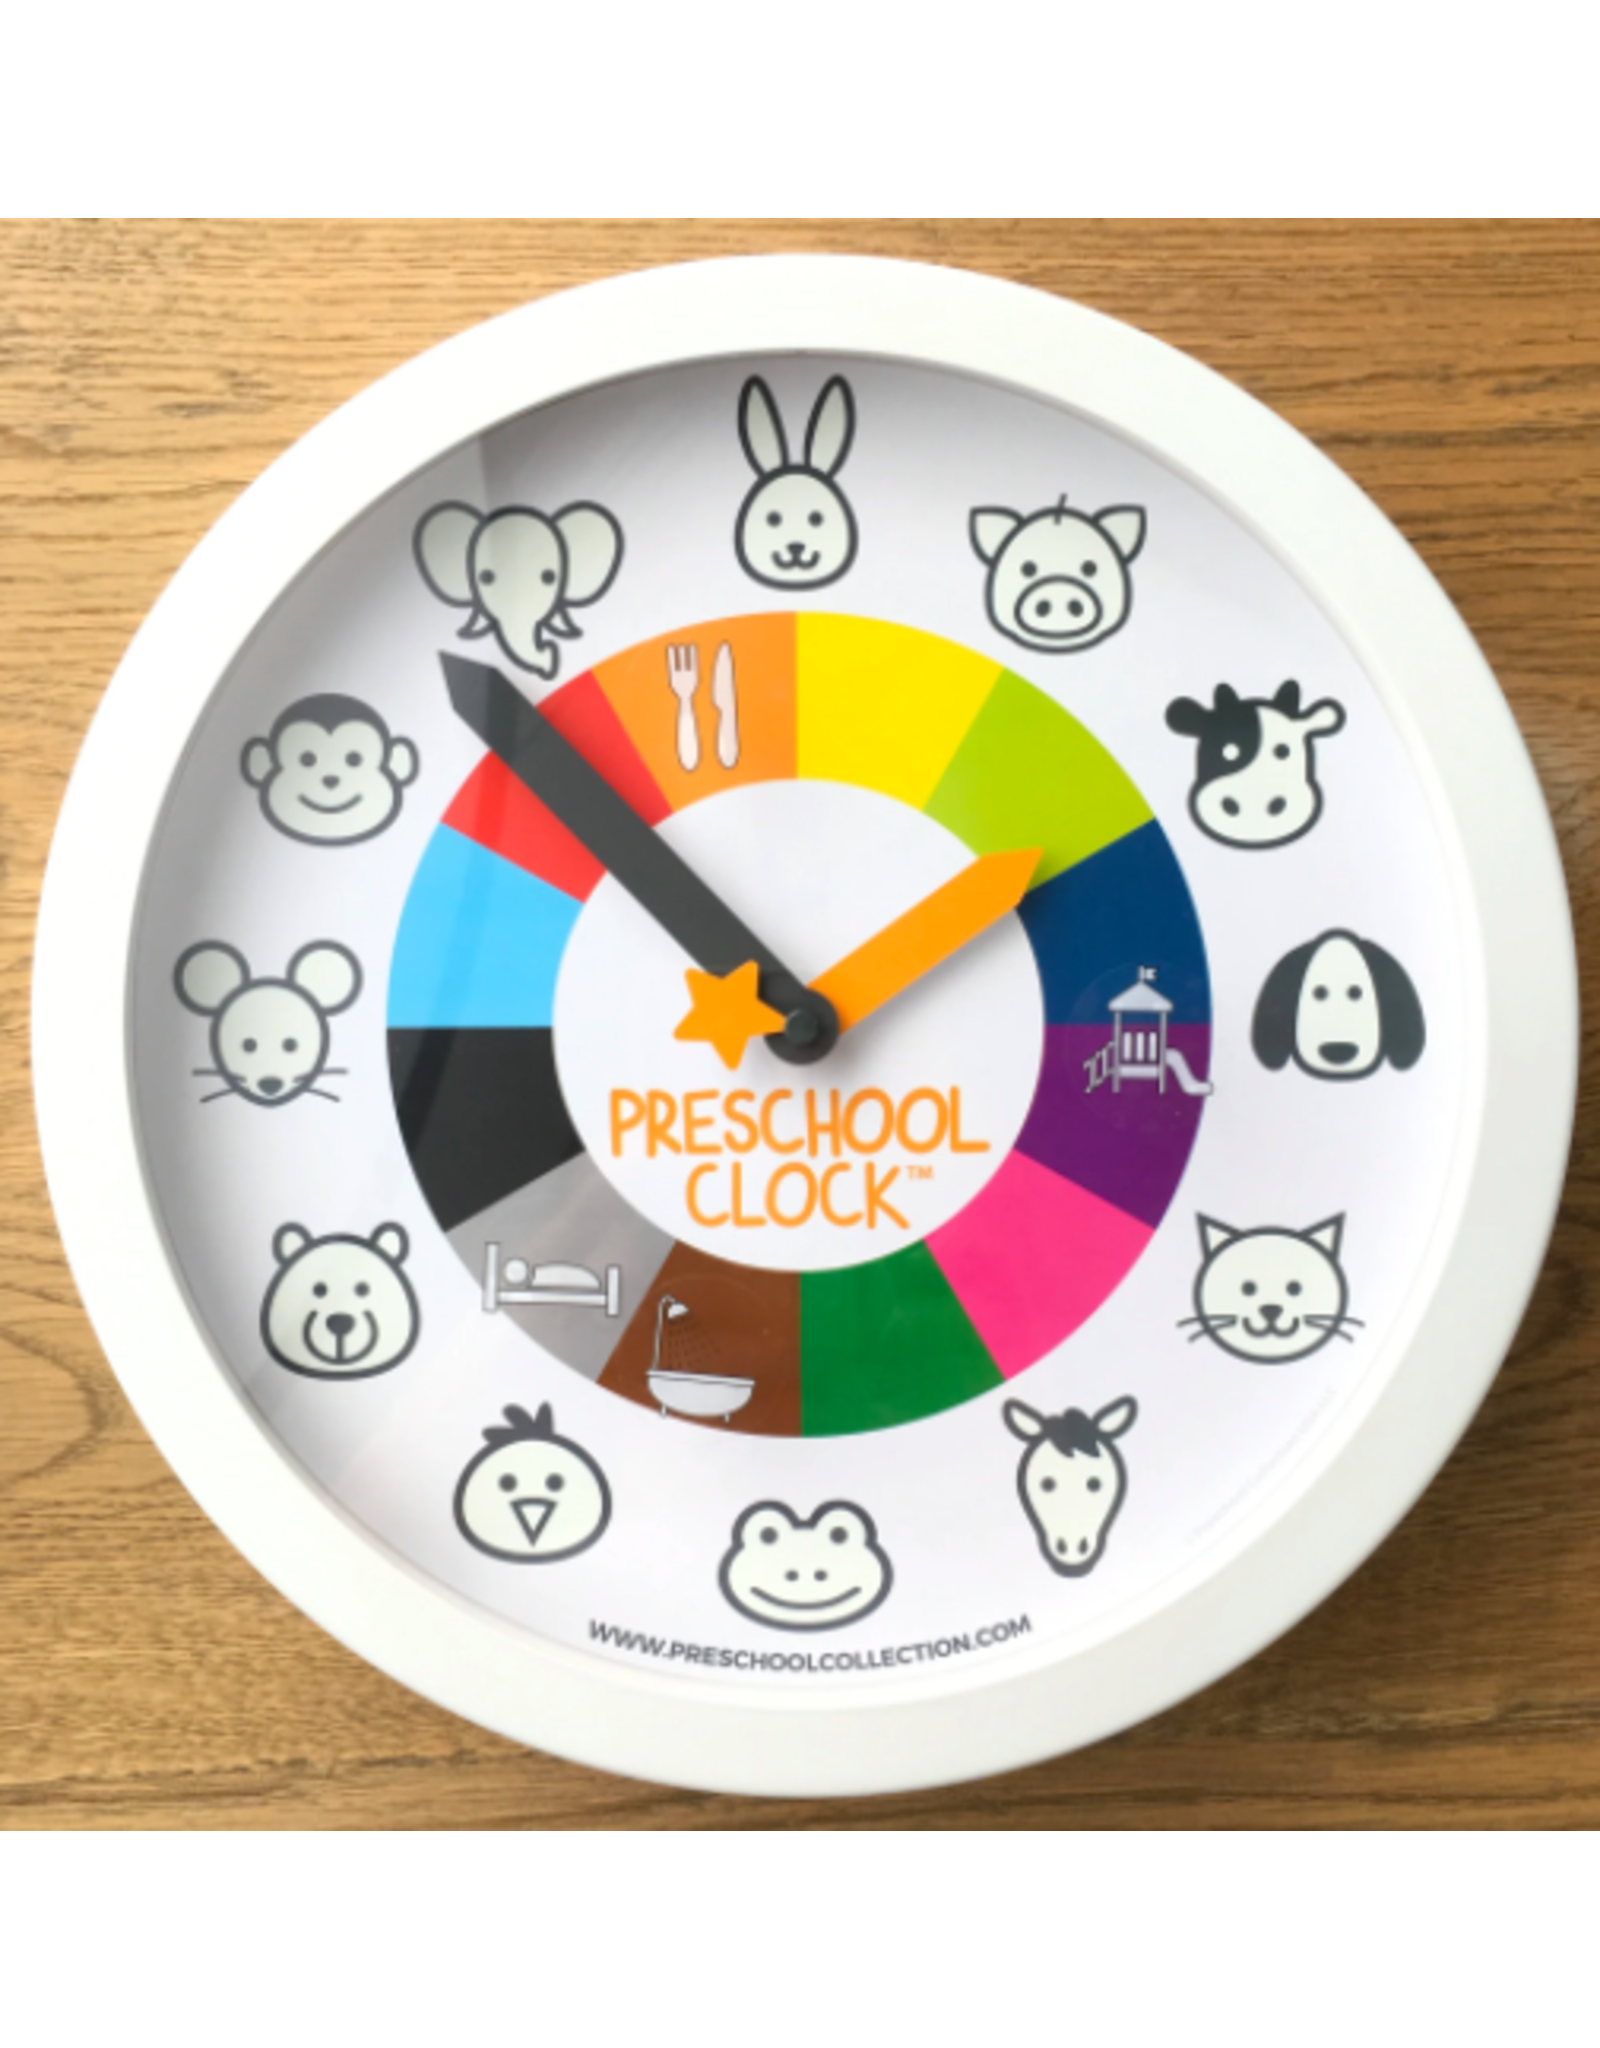 Preschool Clock